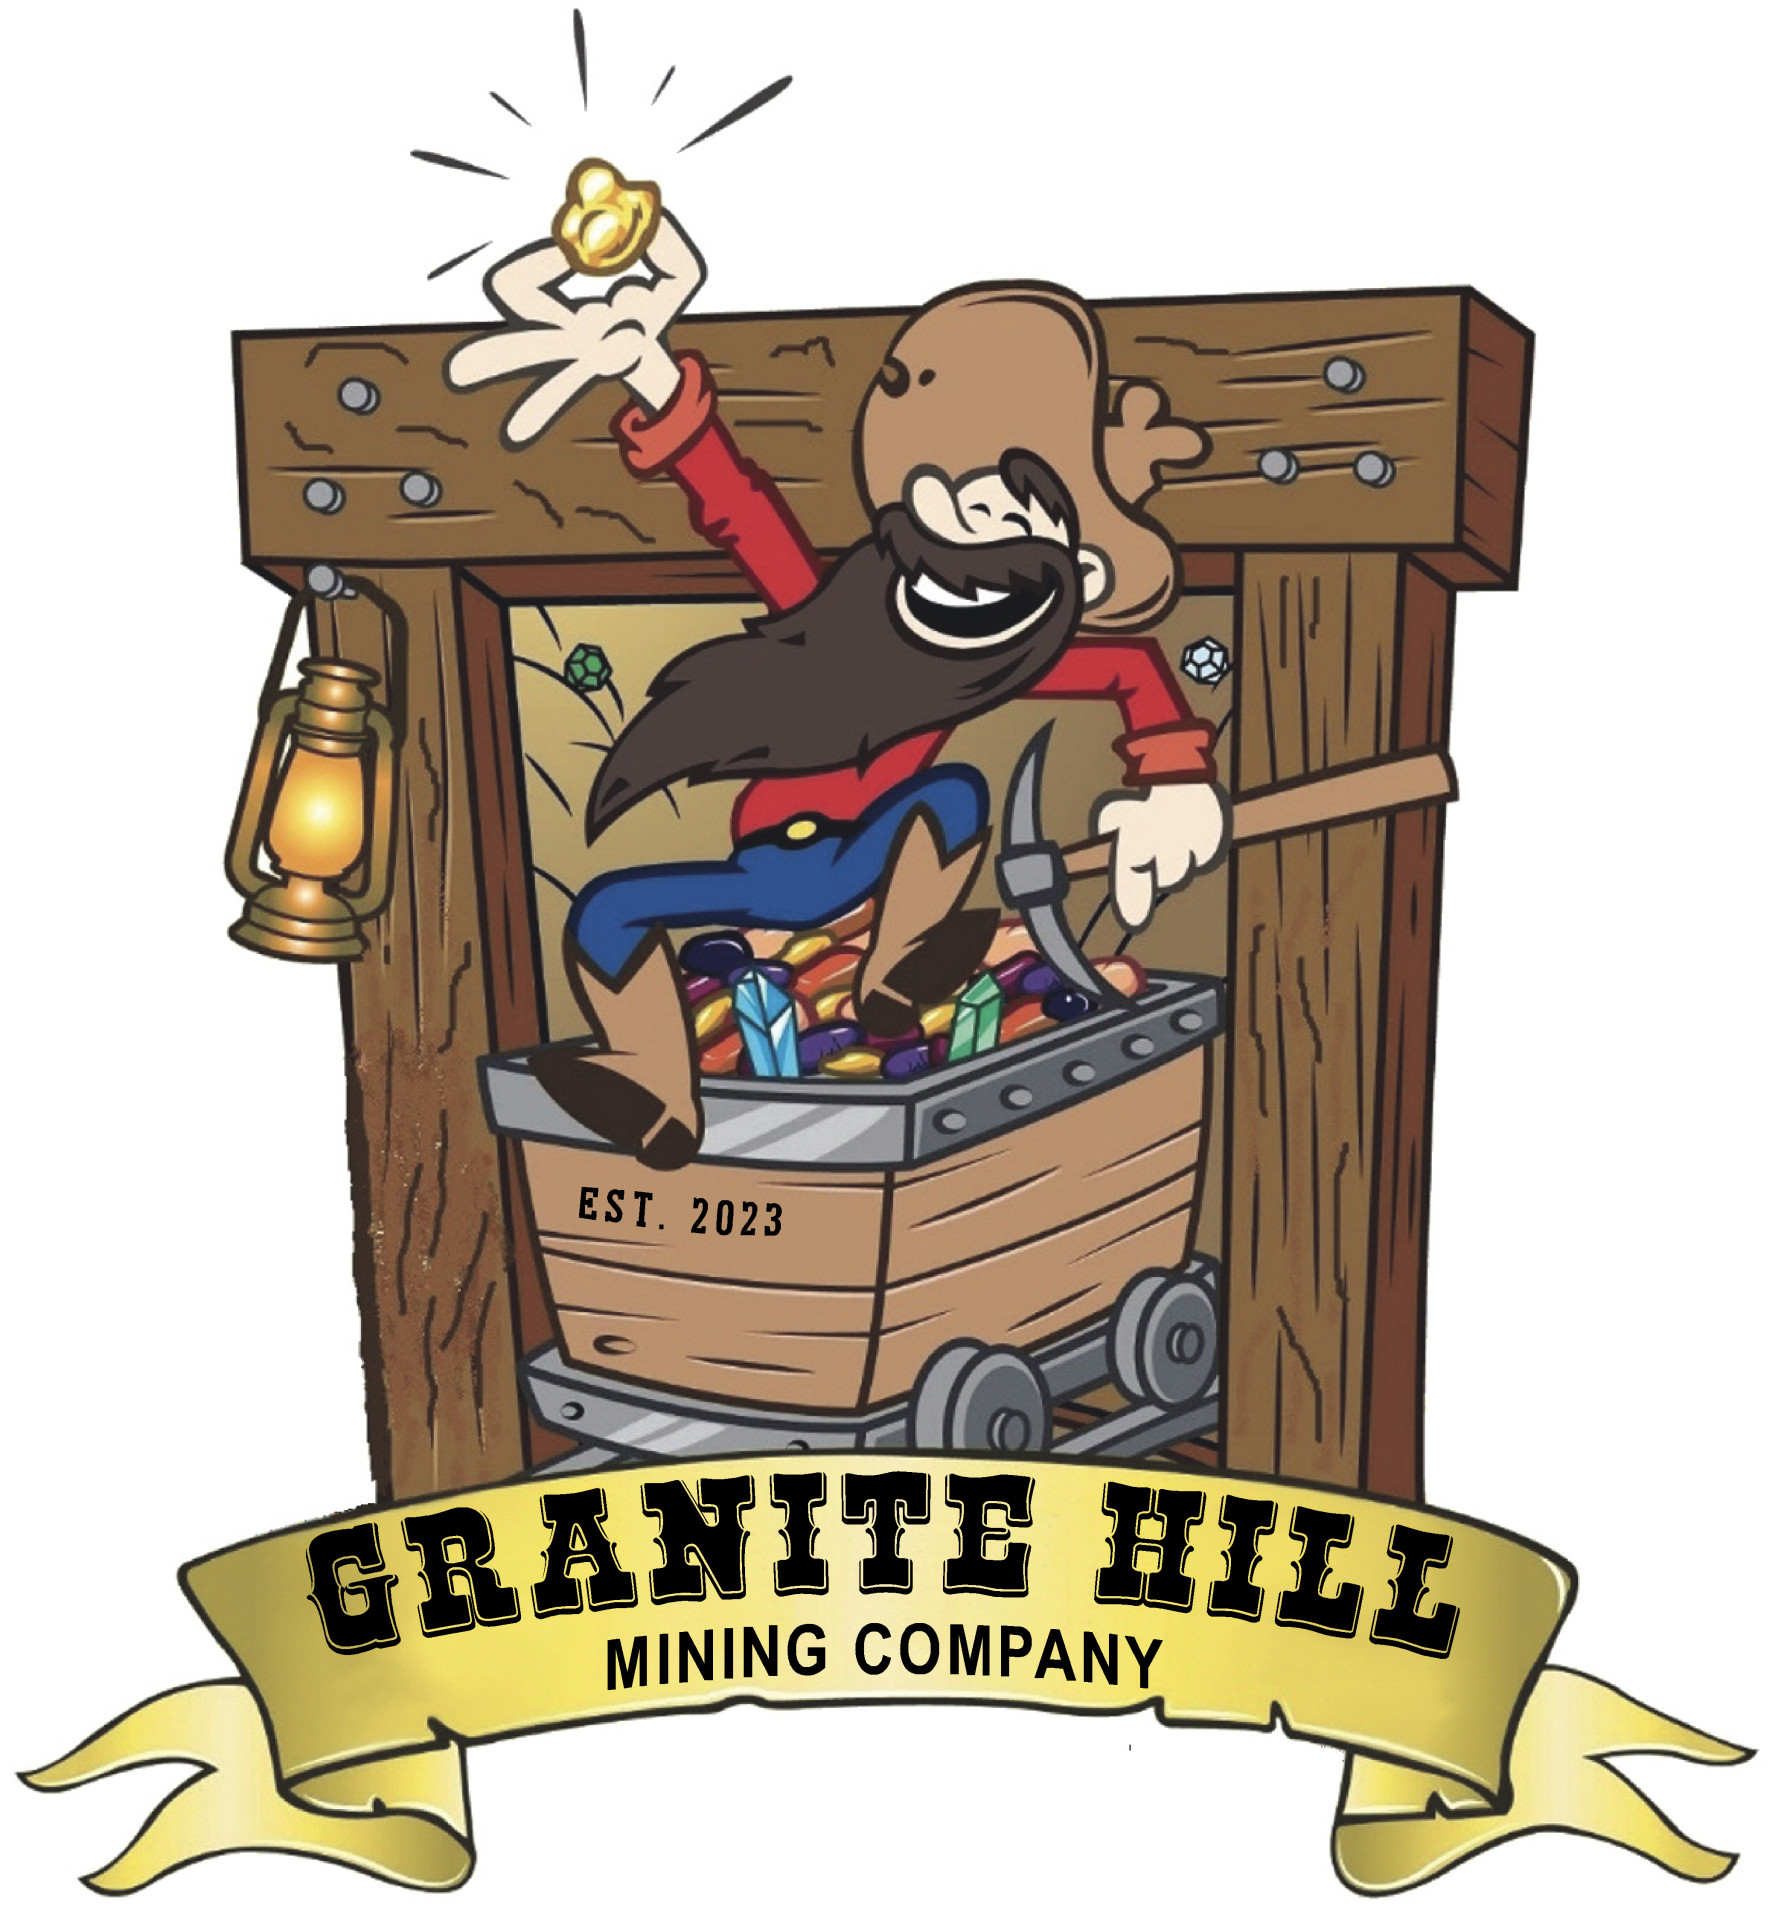 GRANITE HILL 3.7.23